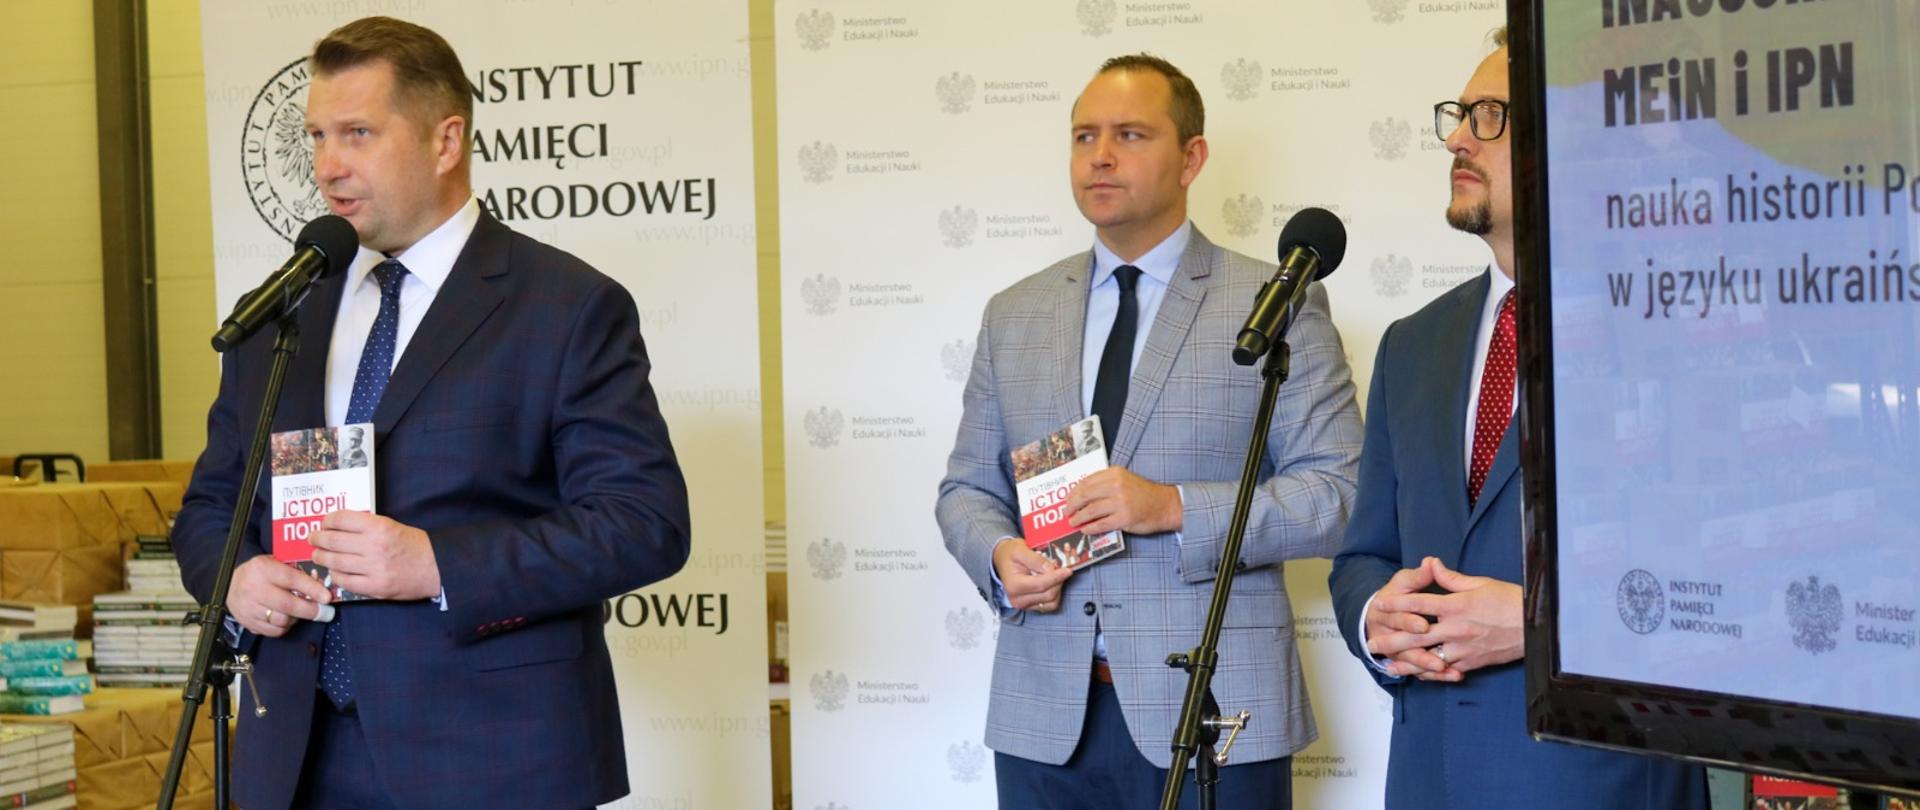 Minister Przemysław Czarnek prezentuje książkę. Z tyłu za nim stoją przedstawiciele IPN